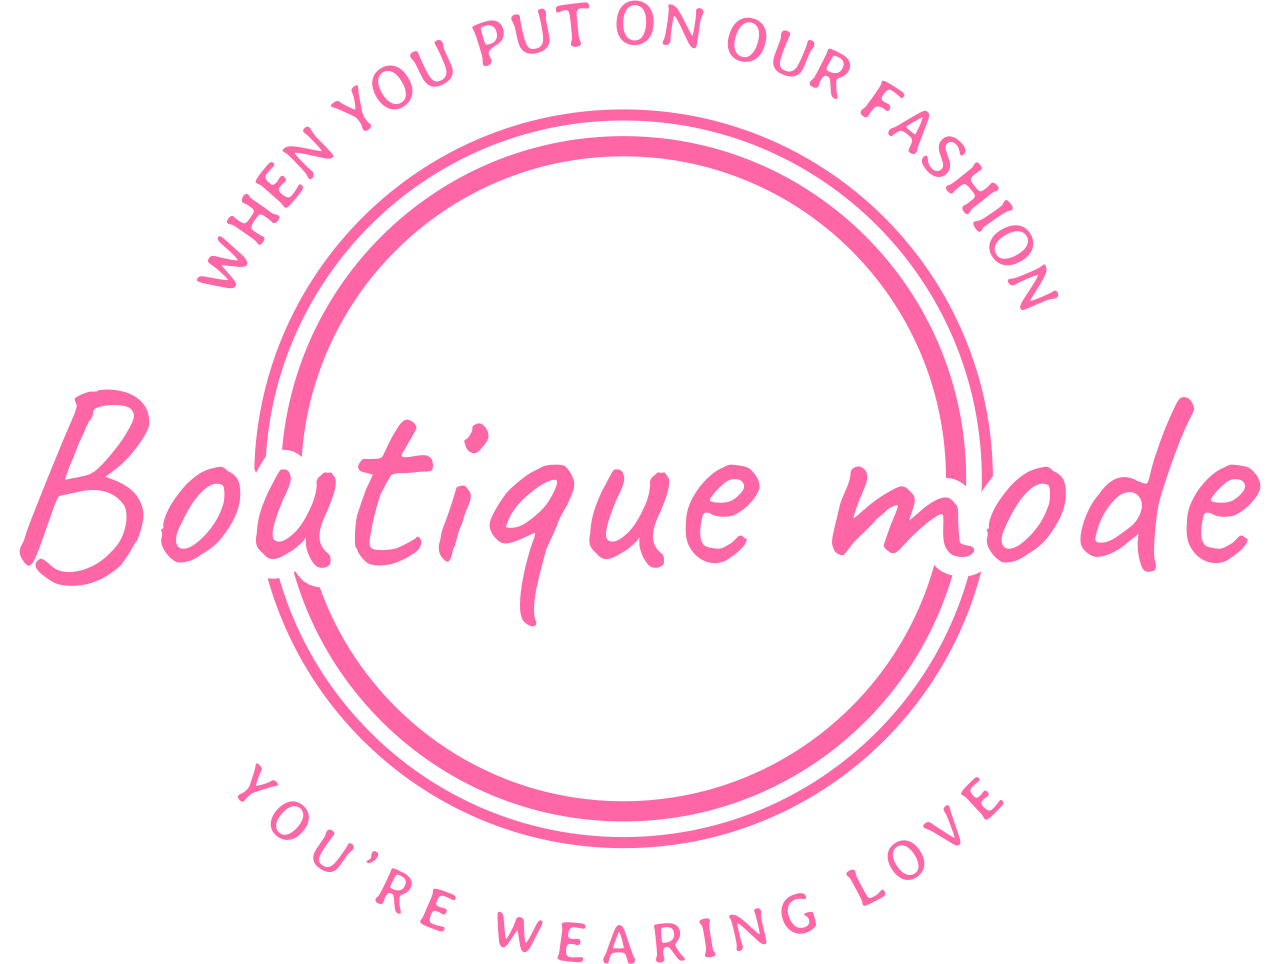 Boutique mode's logo